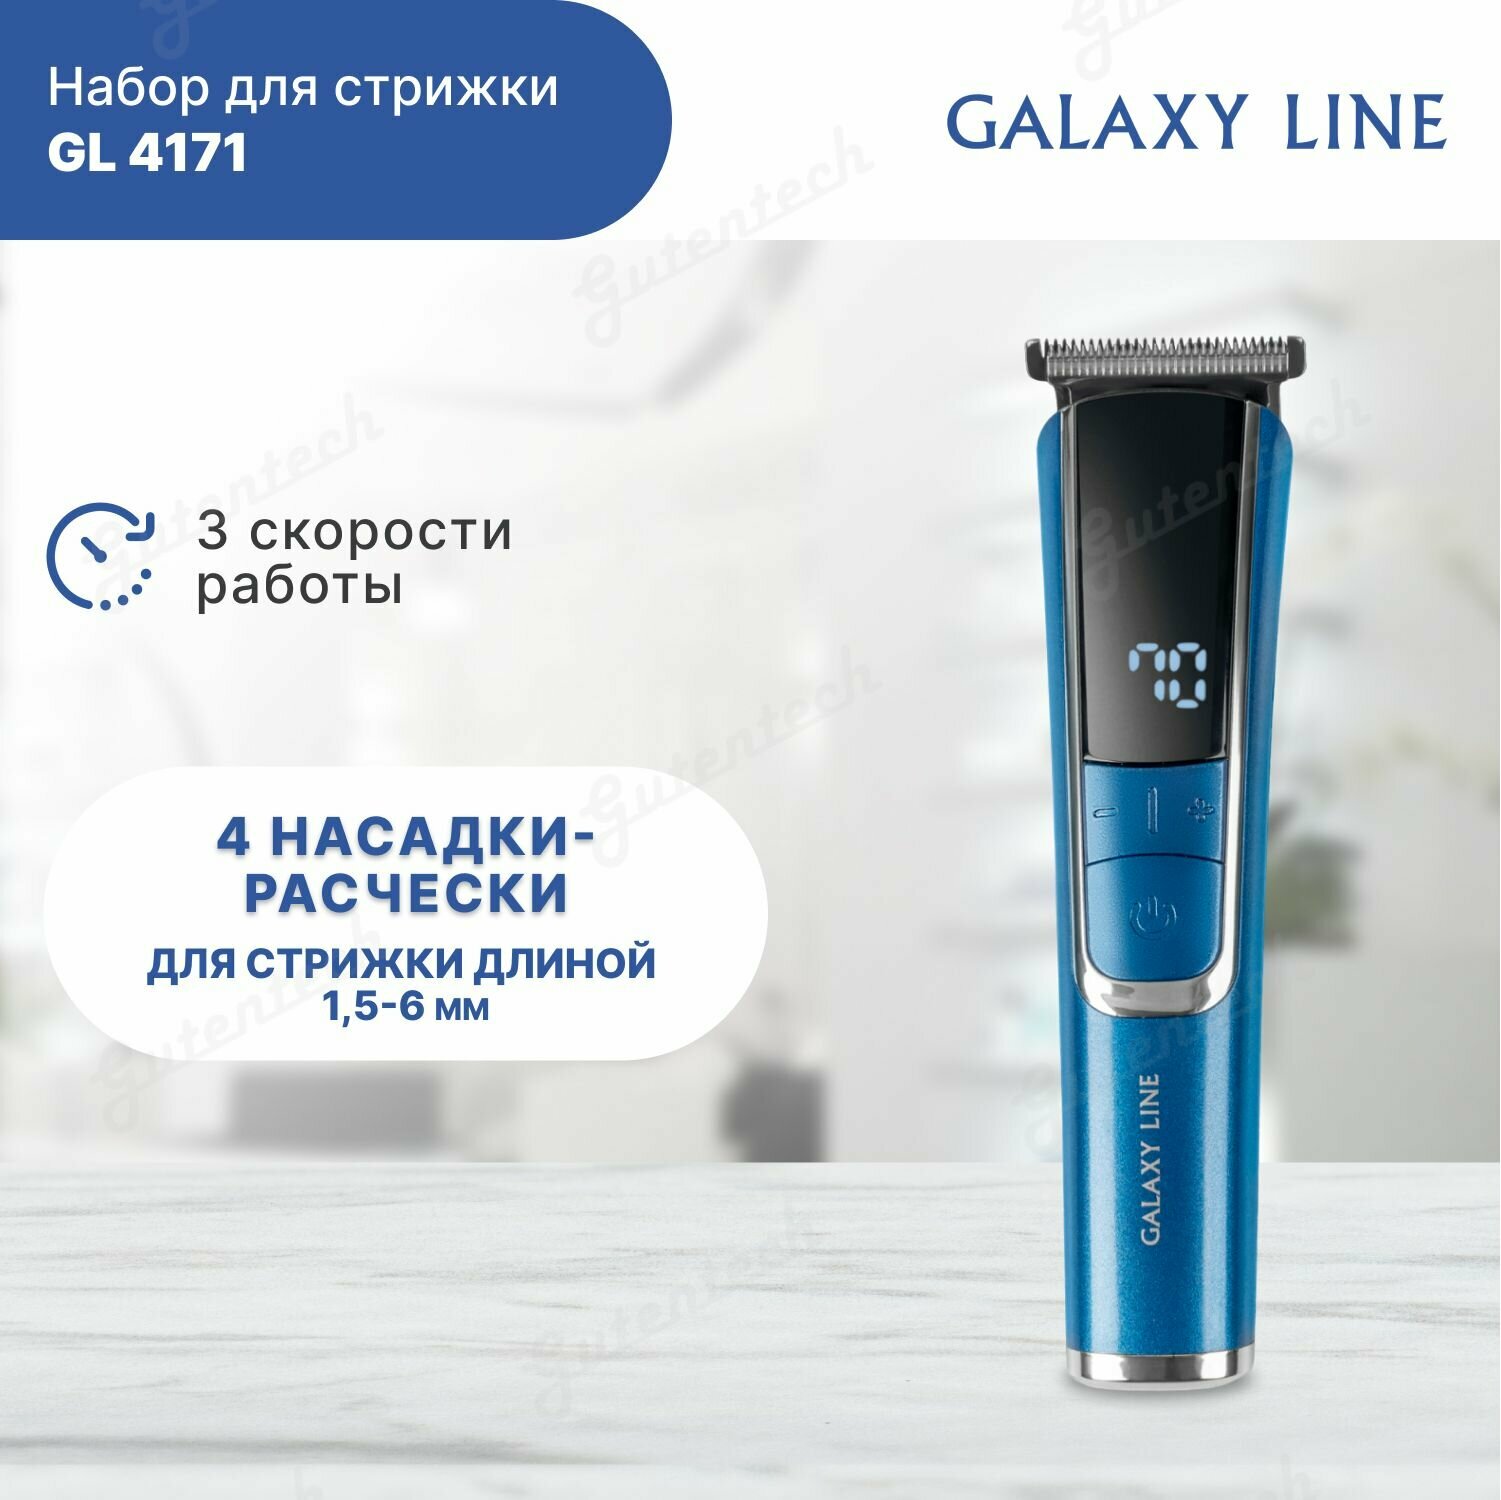 Набор для стрижки Galaxy LINE GL 4171